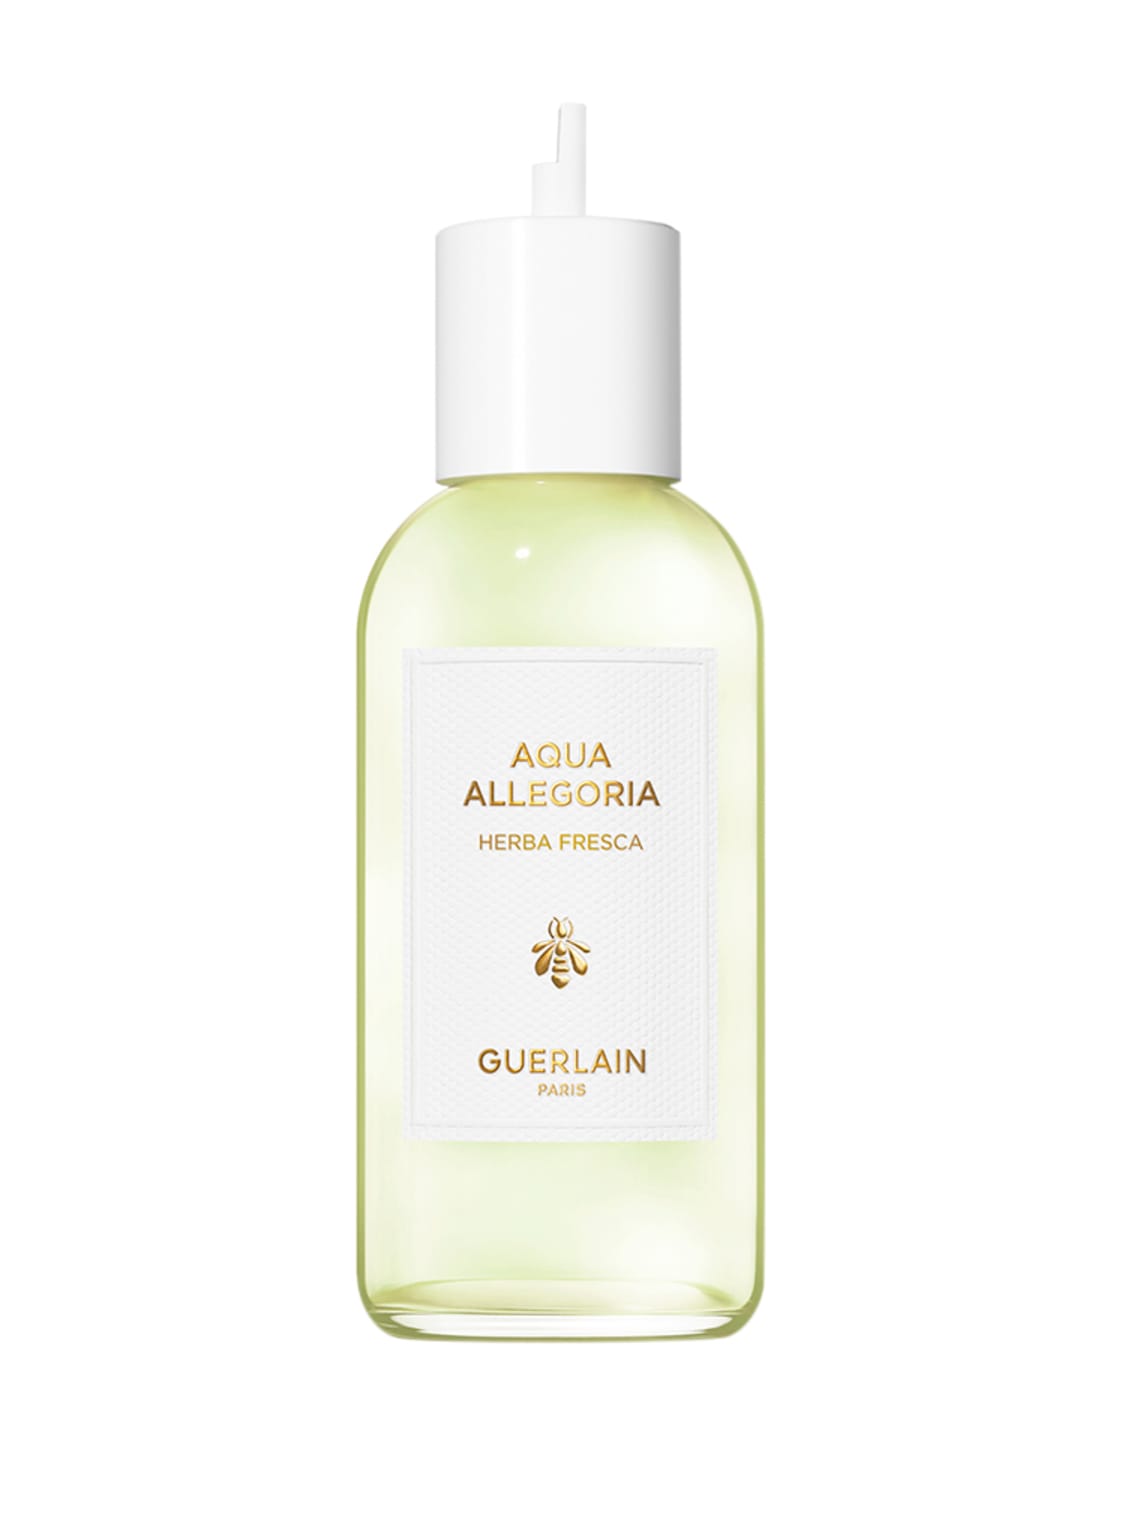 Guerlain Aqua Allegoria Herba Fresca Refill Eau de Toilette 200 ml